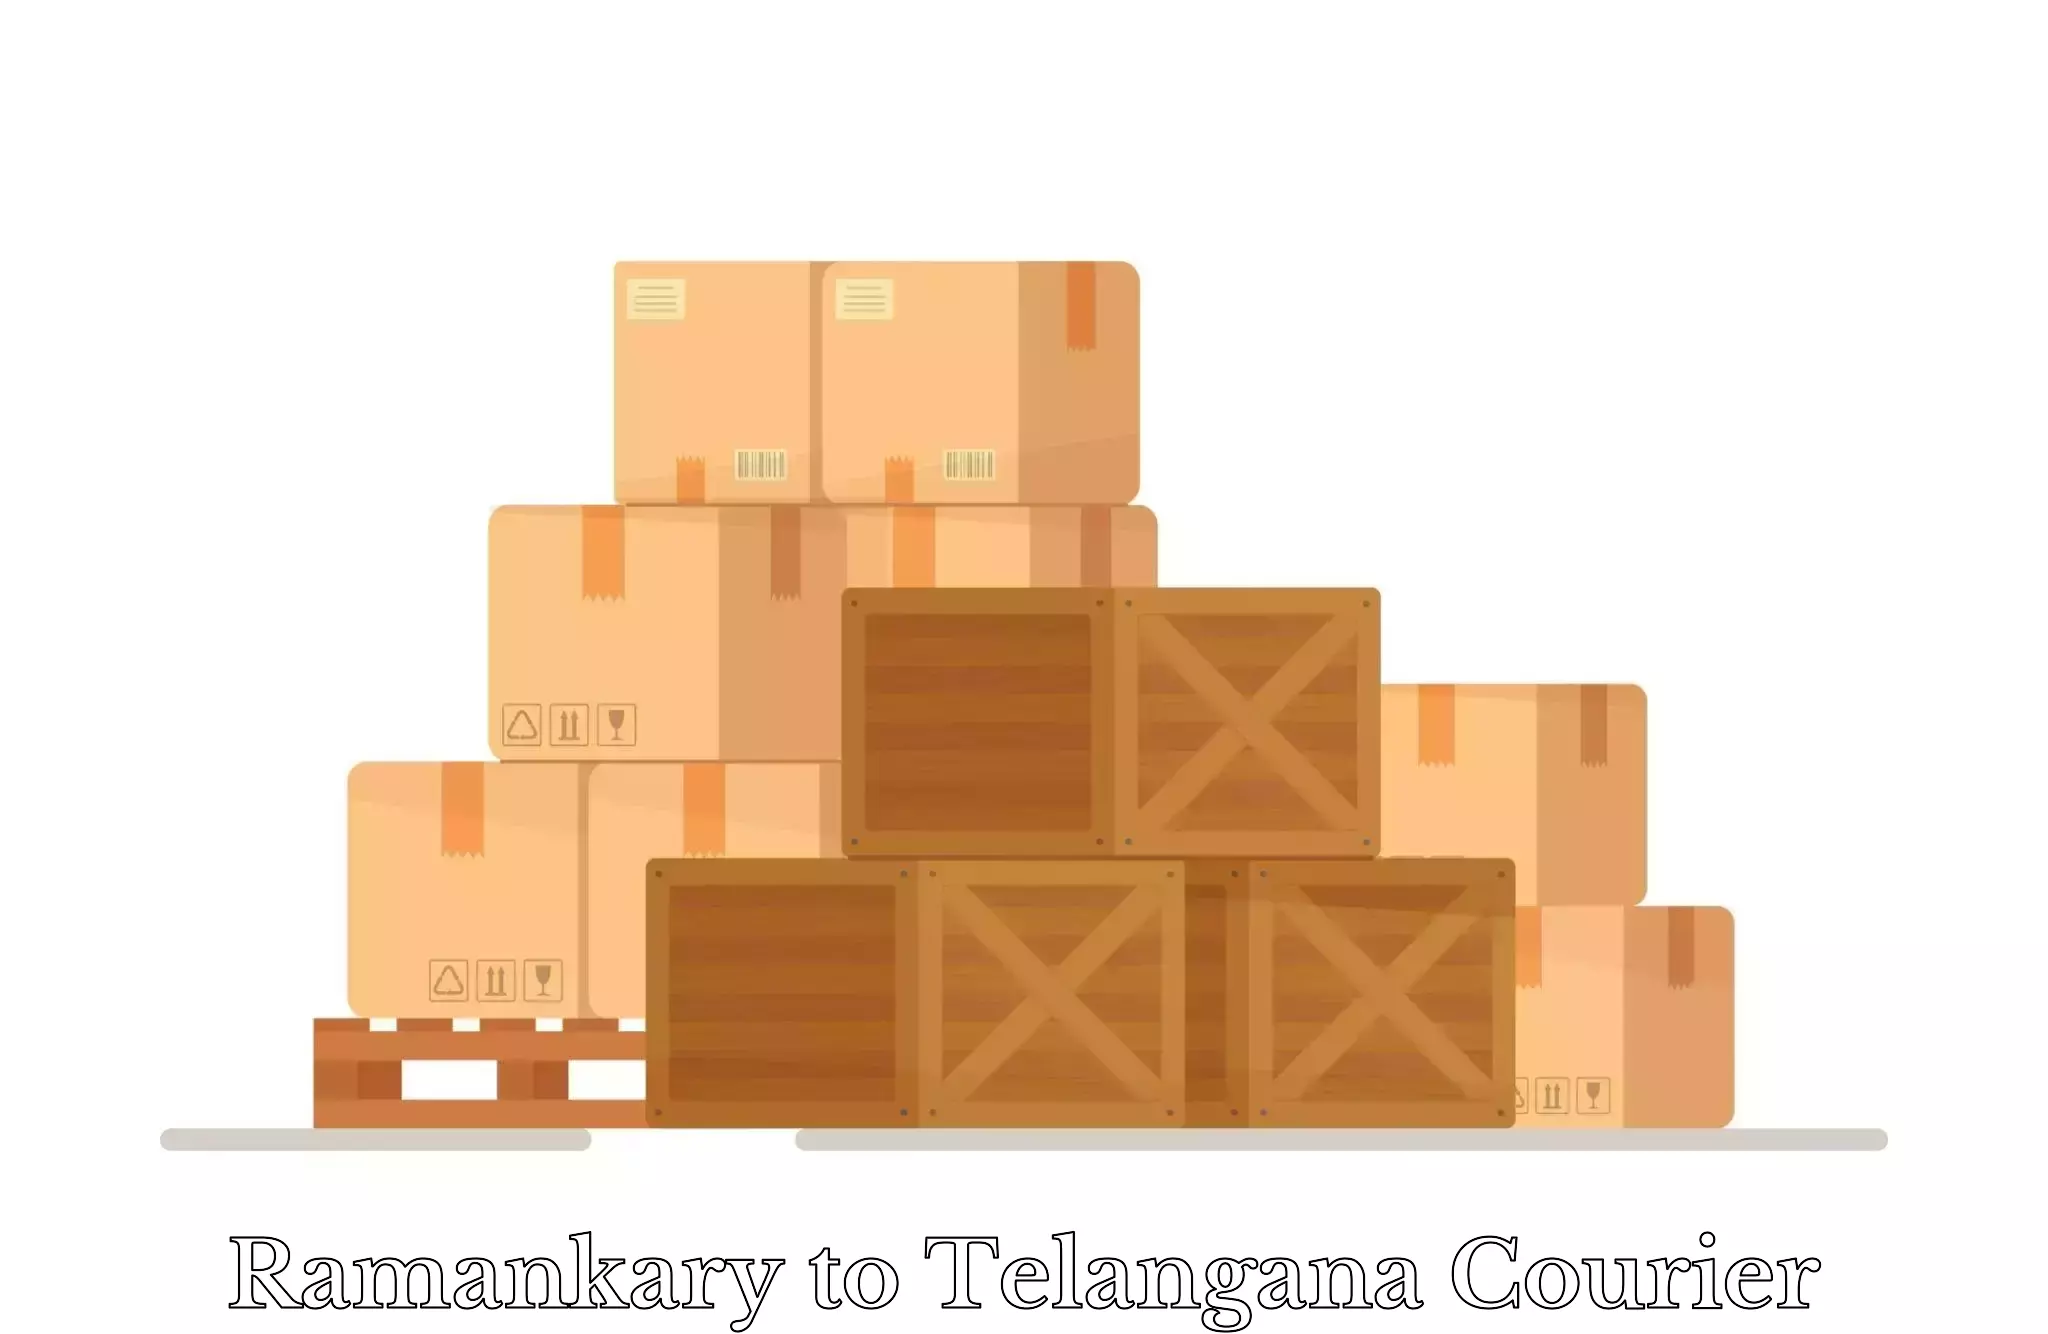 Heavy luggage shipping Ramankary to Sikanderguda